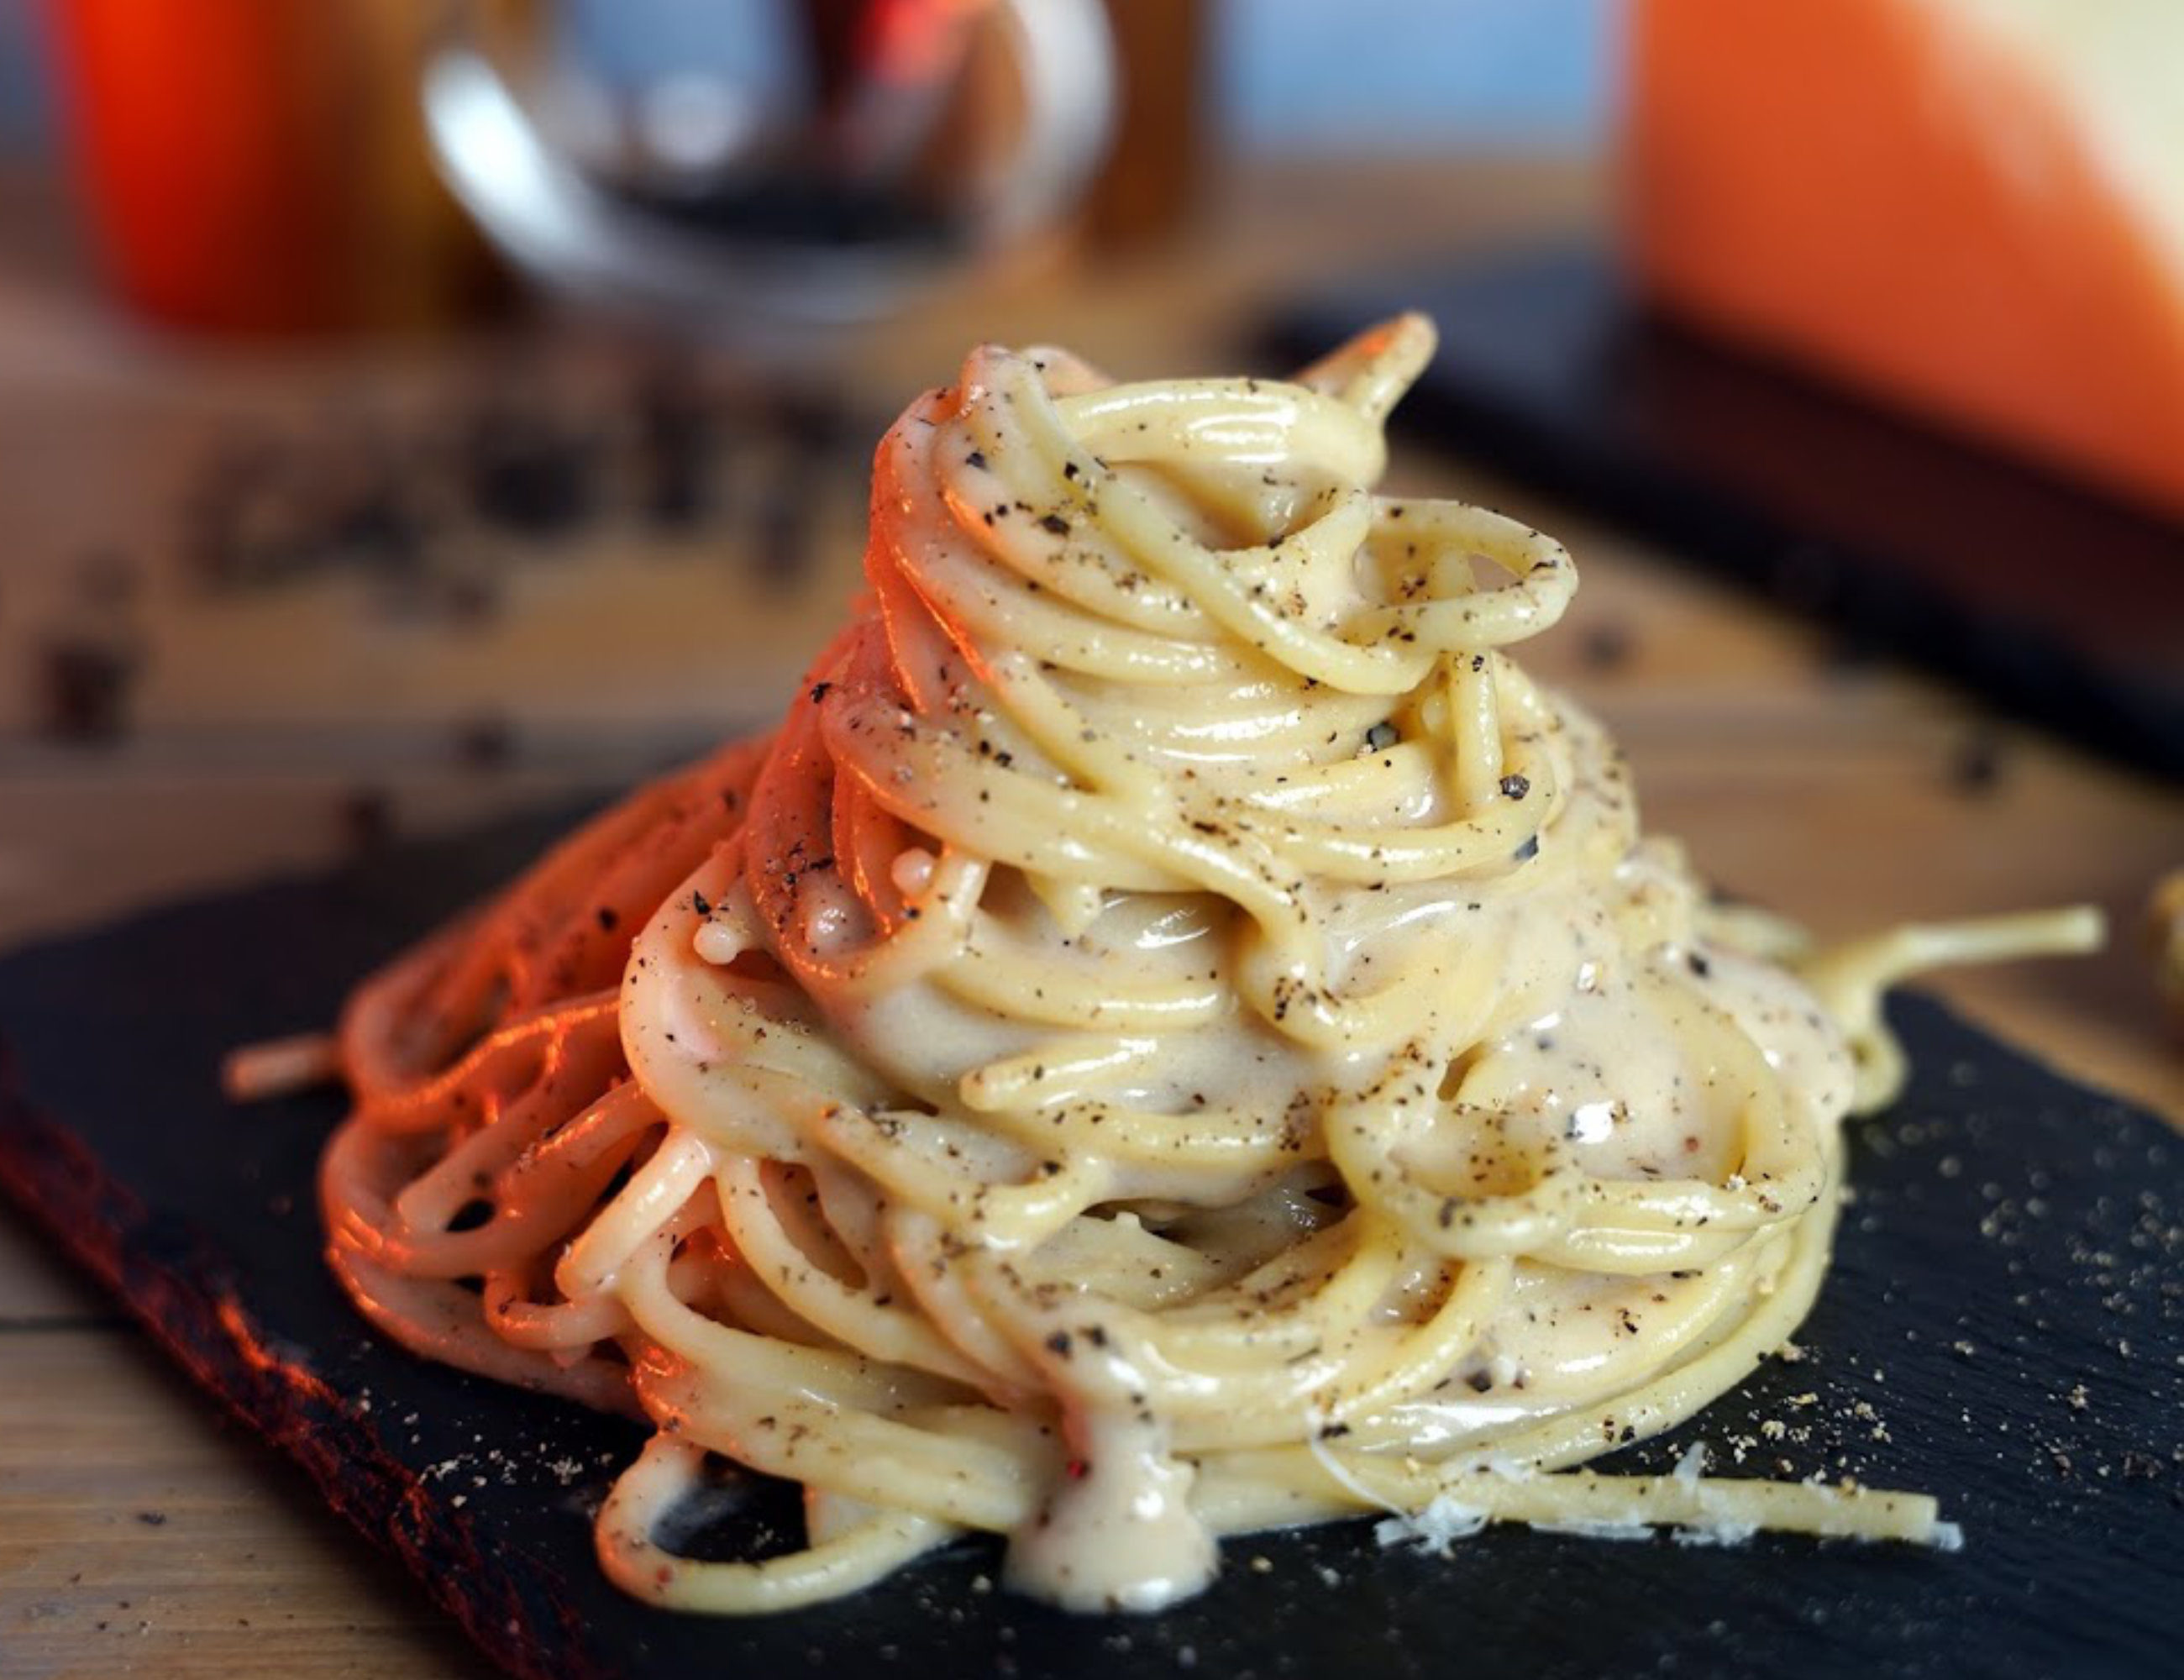 How to make Italian Homemade Pasta - Recipes from Italy